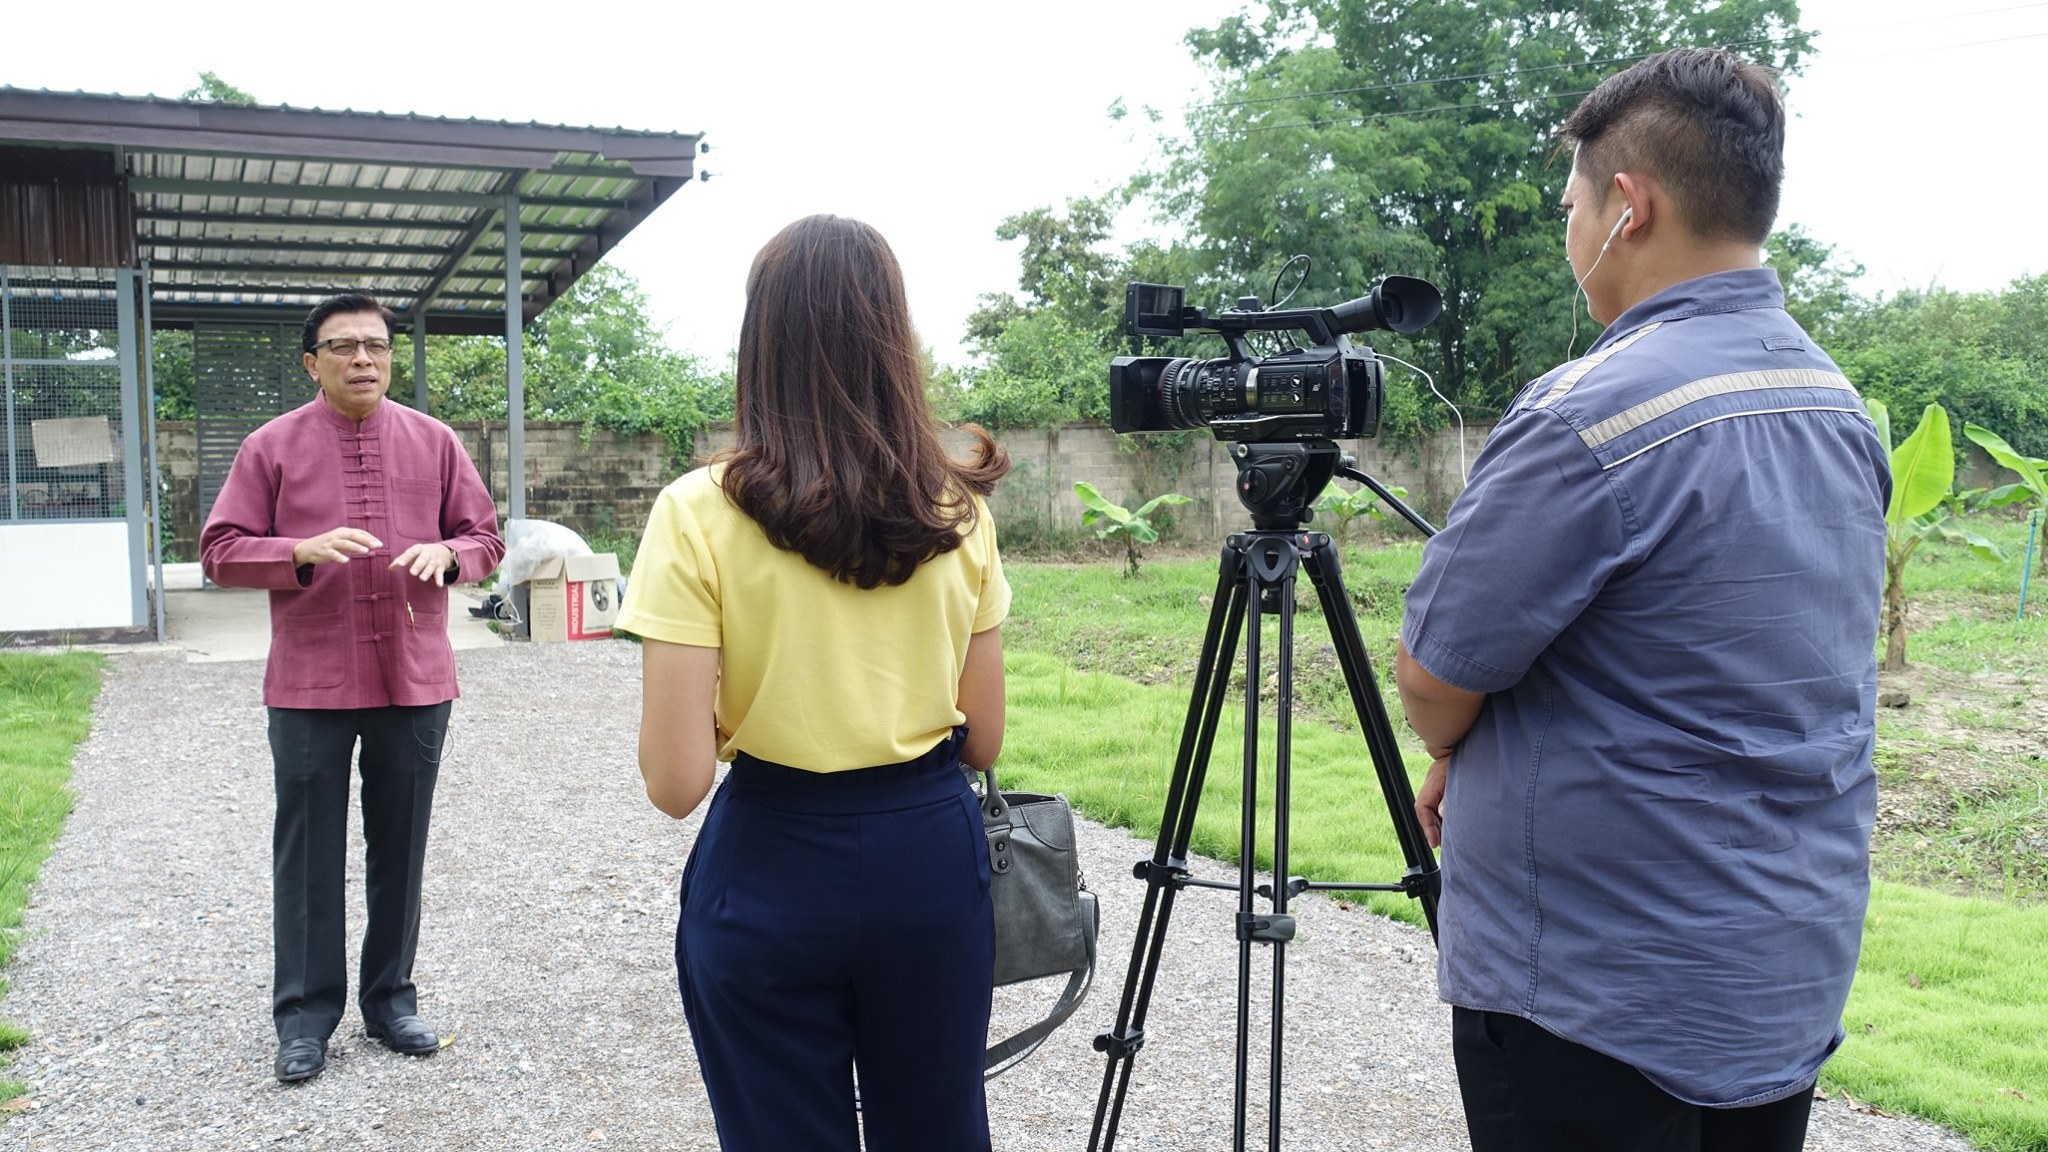 ผู้ช่วยศาสตราจารย์ ดร.เสนาะ กลิ่นงาม อธิการบดีมหาวิทยาลัยราชภัฏเพชรบุรี ให้สัมภาษณ์ผู้สื่อข่าวสถานีวิทยุโทรทัศน์แห่งประเทศไทย (สทท.) การมีส่วนร่วมของมหาวิทยาลัยฯ ในการบริหารจัดการขยะ